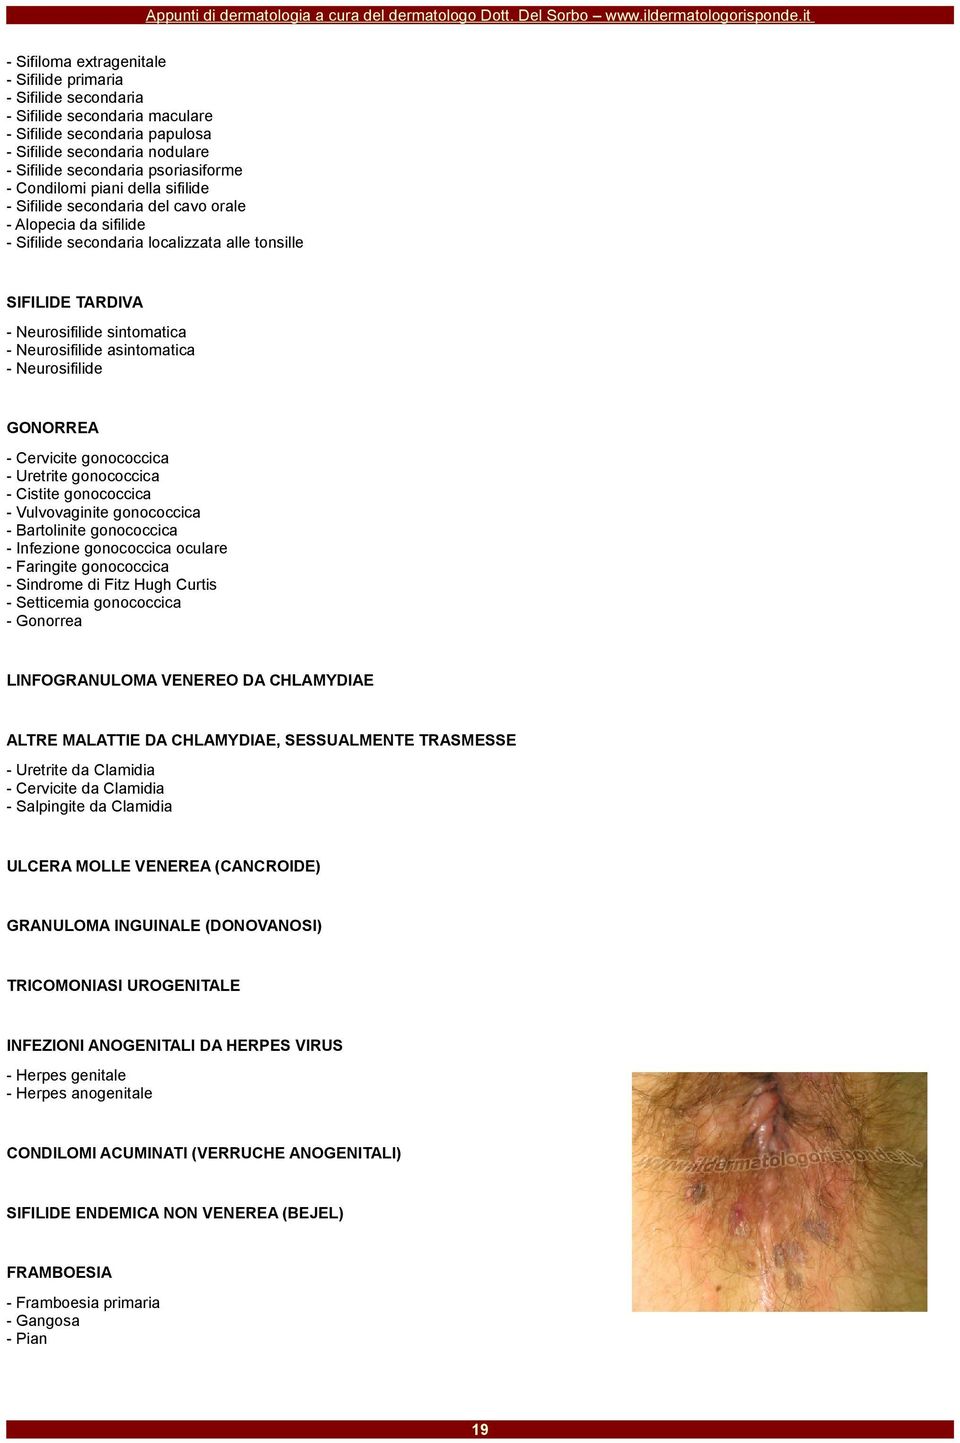 asintomatica - Neurosifilide GONORREA - Cervicite gonococcica - Uretrite gonococcica - Cistite gonococcica - Vulvovaginite gonococcica - Bartolinite gonococcica - Infezione gonococcica oculare -